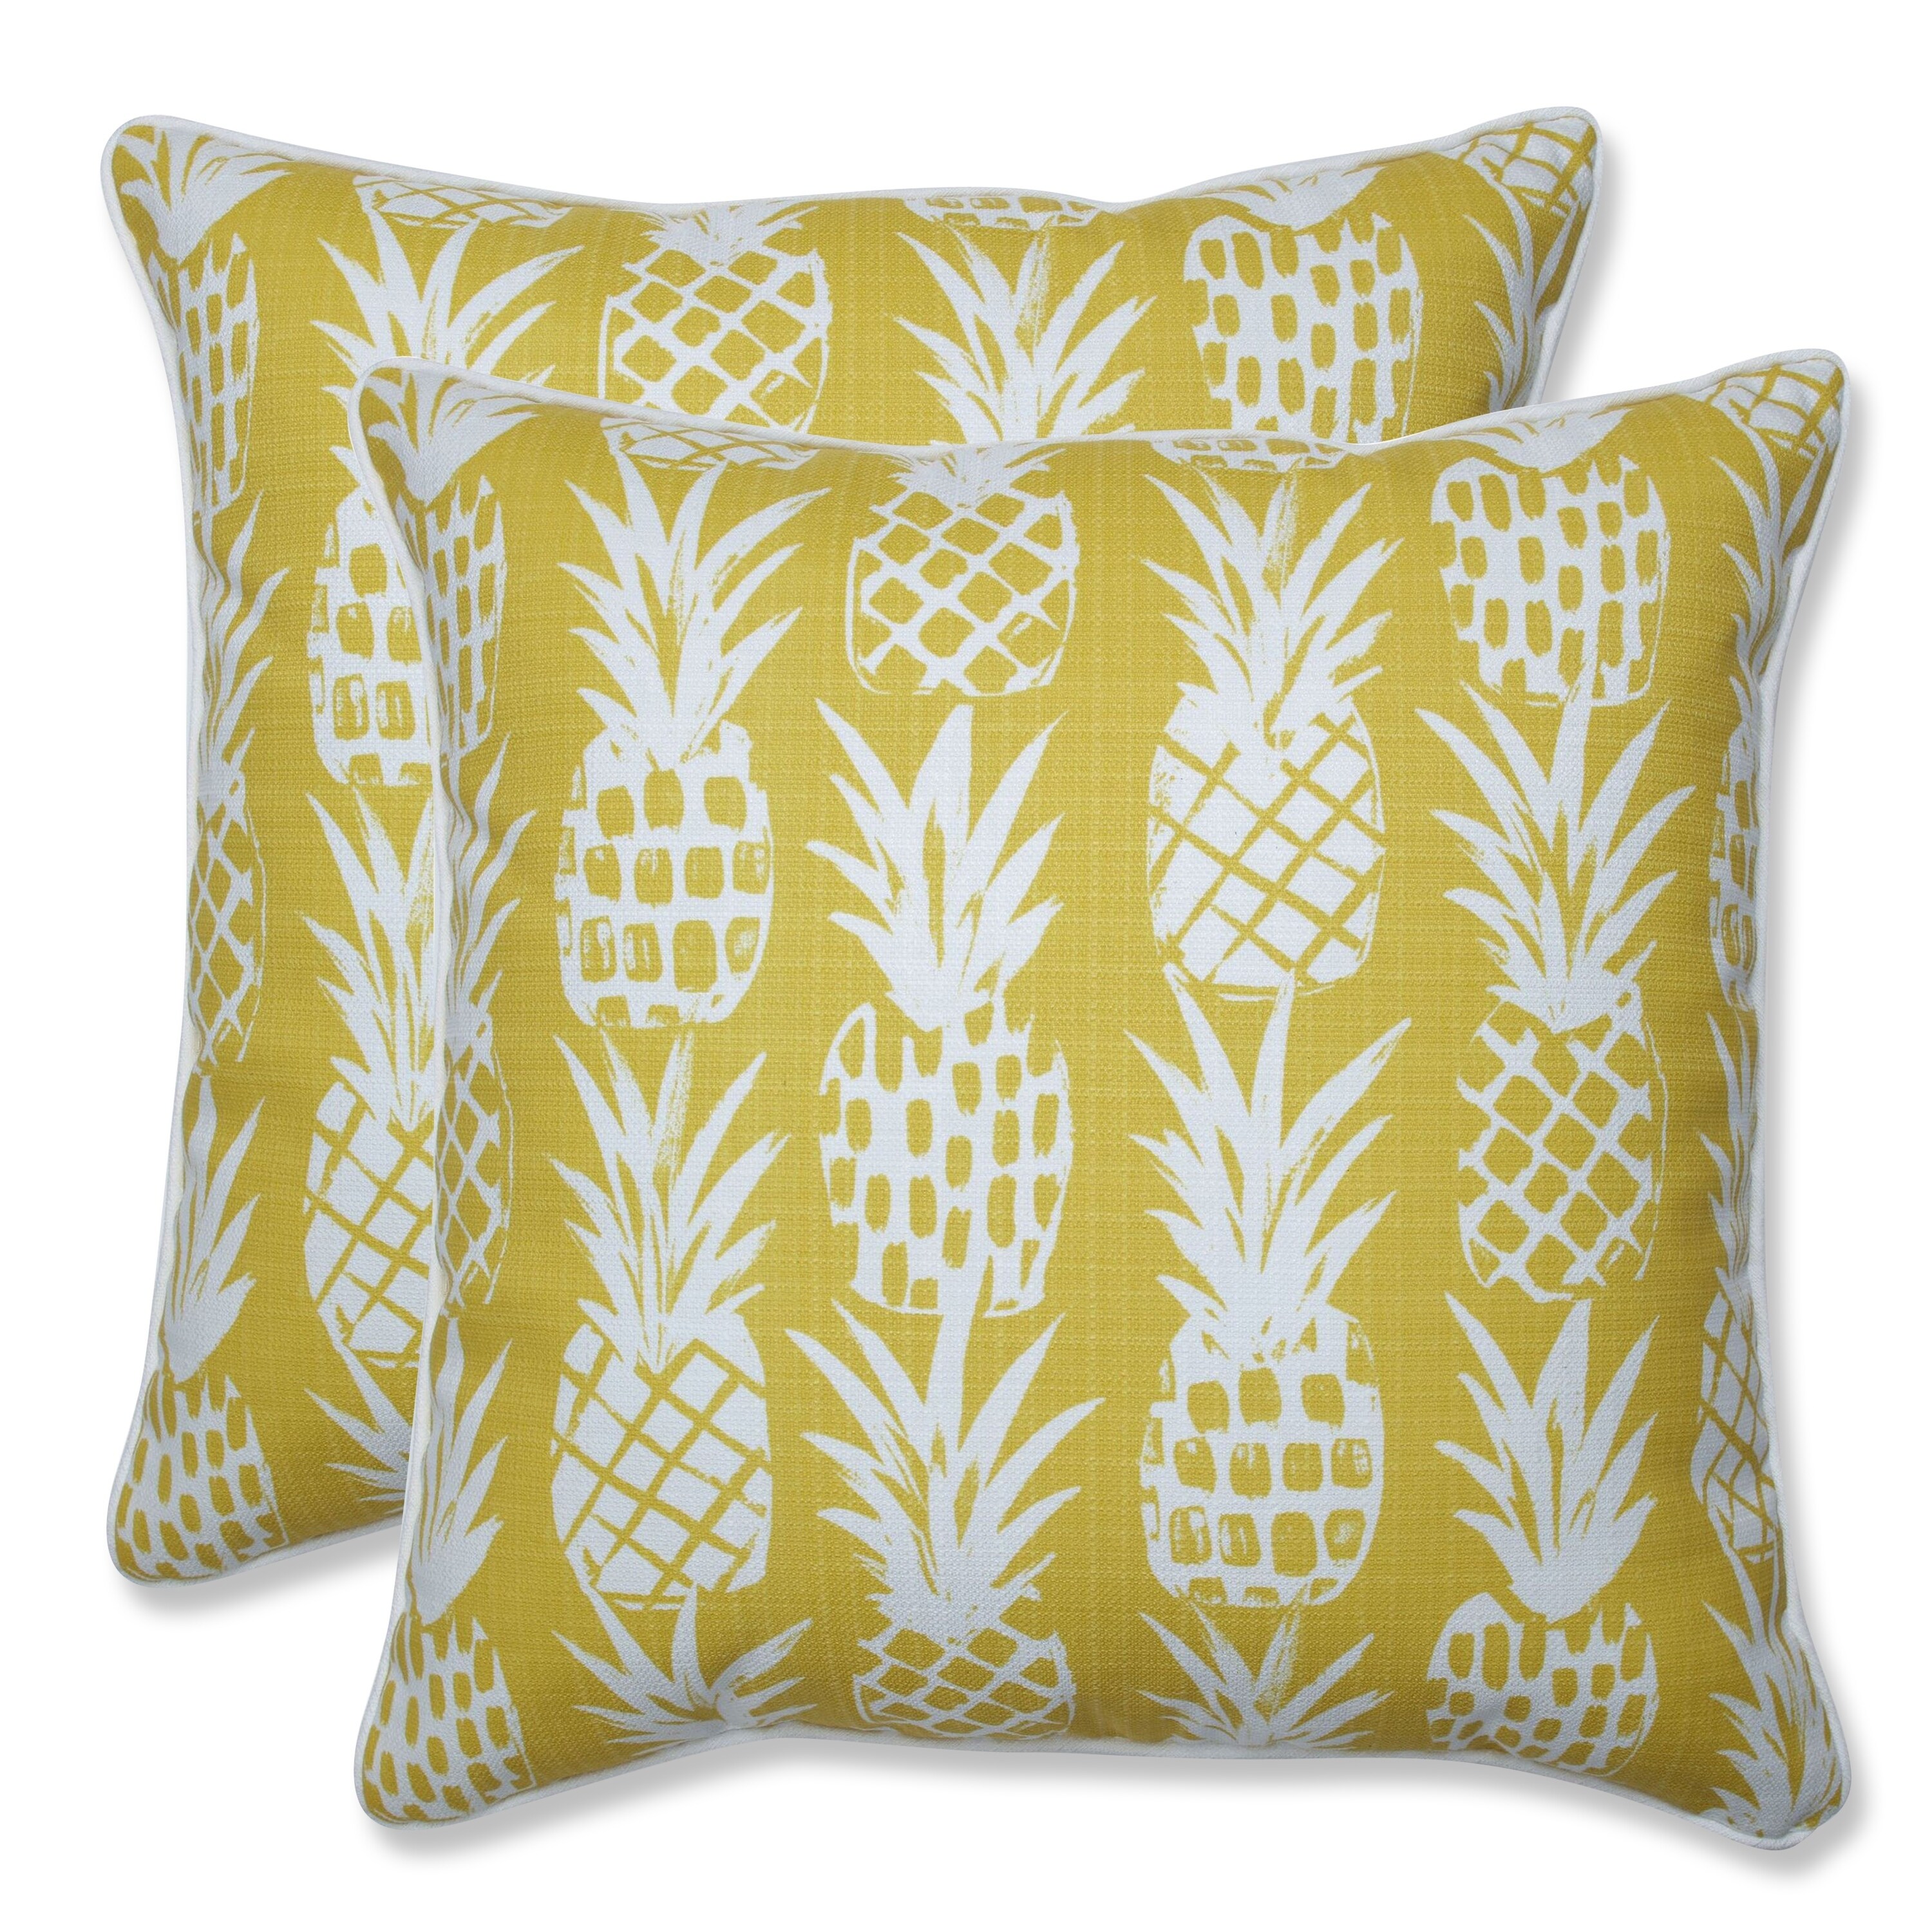 pineapple throw pillows